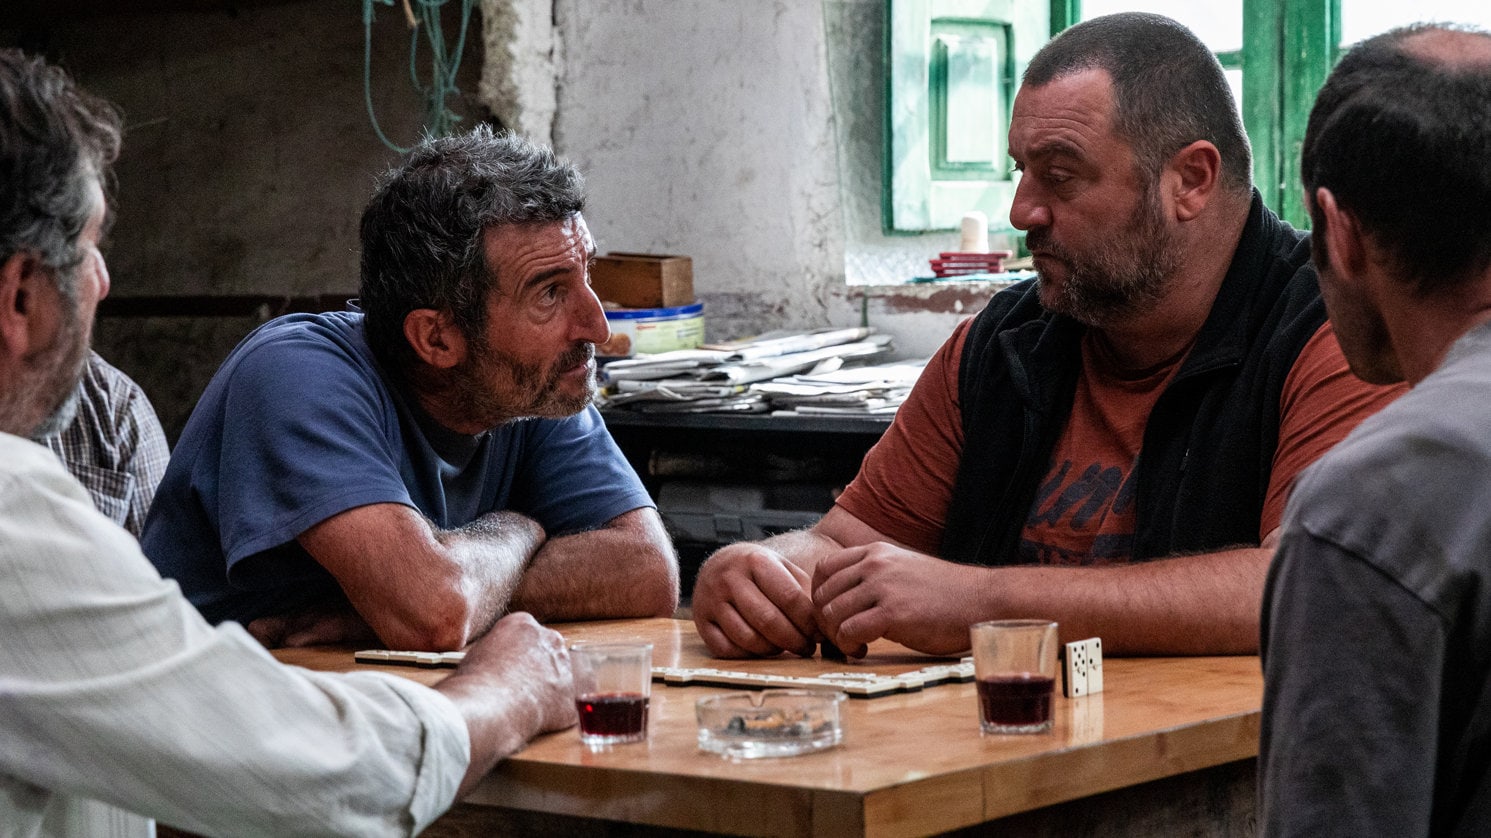 Xan (Luis Zahera) et Antoine (Denis Ménochet) parlent à table au bar dans As Bestas